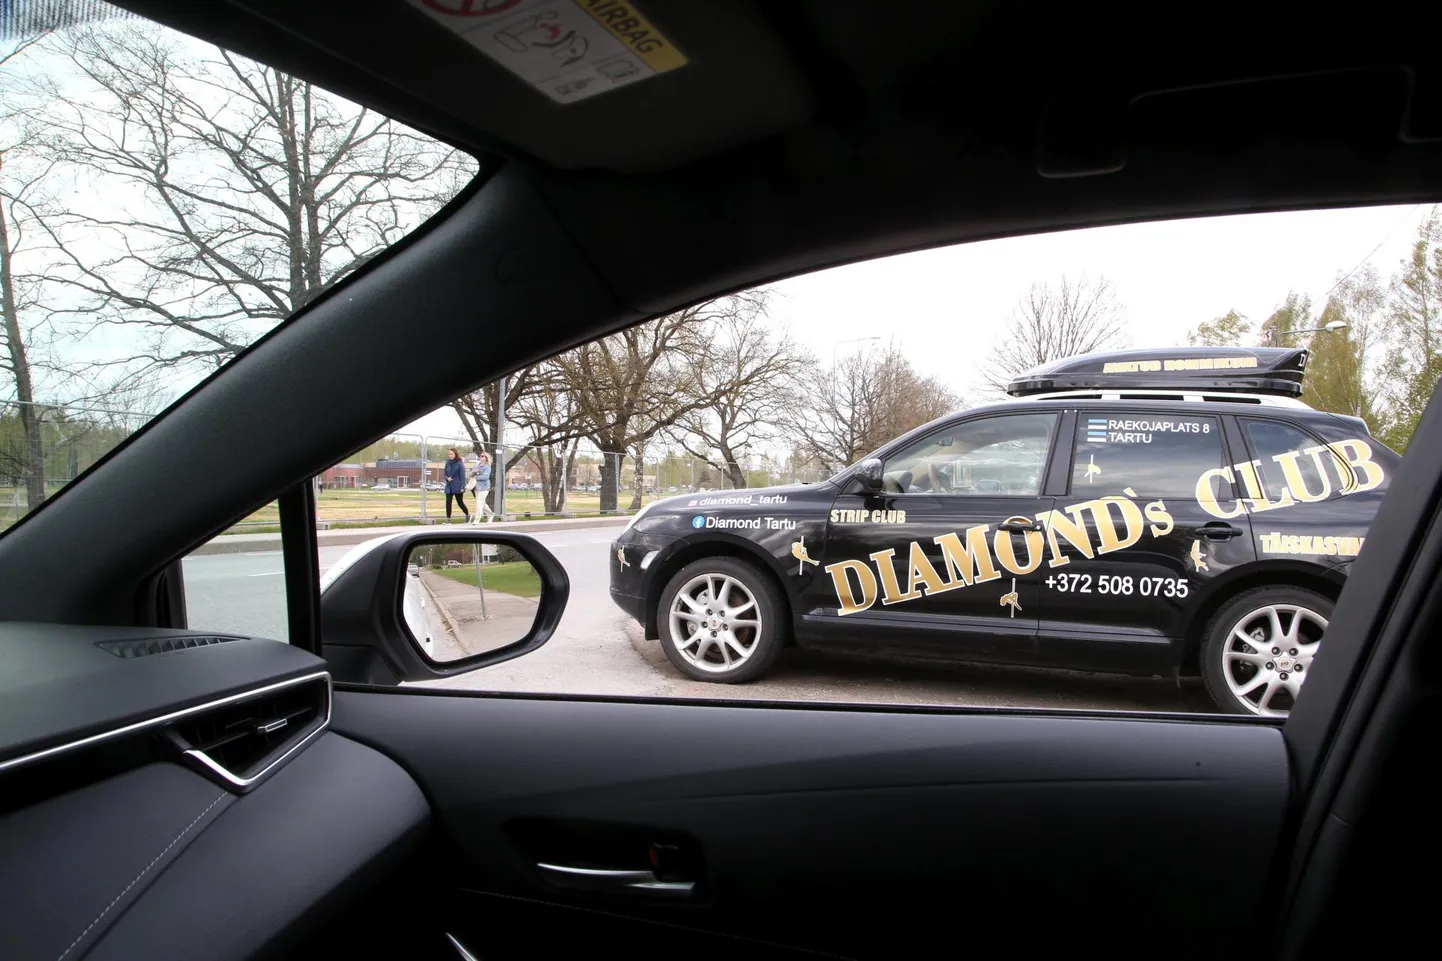 Eesti maaülikooli metsamaja juurde pargitud Diamond’s Clubi reklaamauto varjab Tallinna maanteele pööret sooritavate autojuhtide vaatevälja.